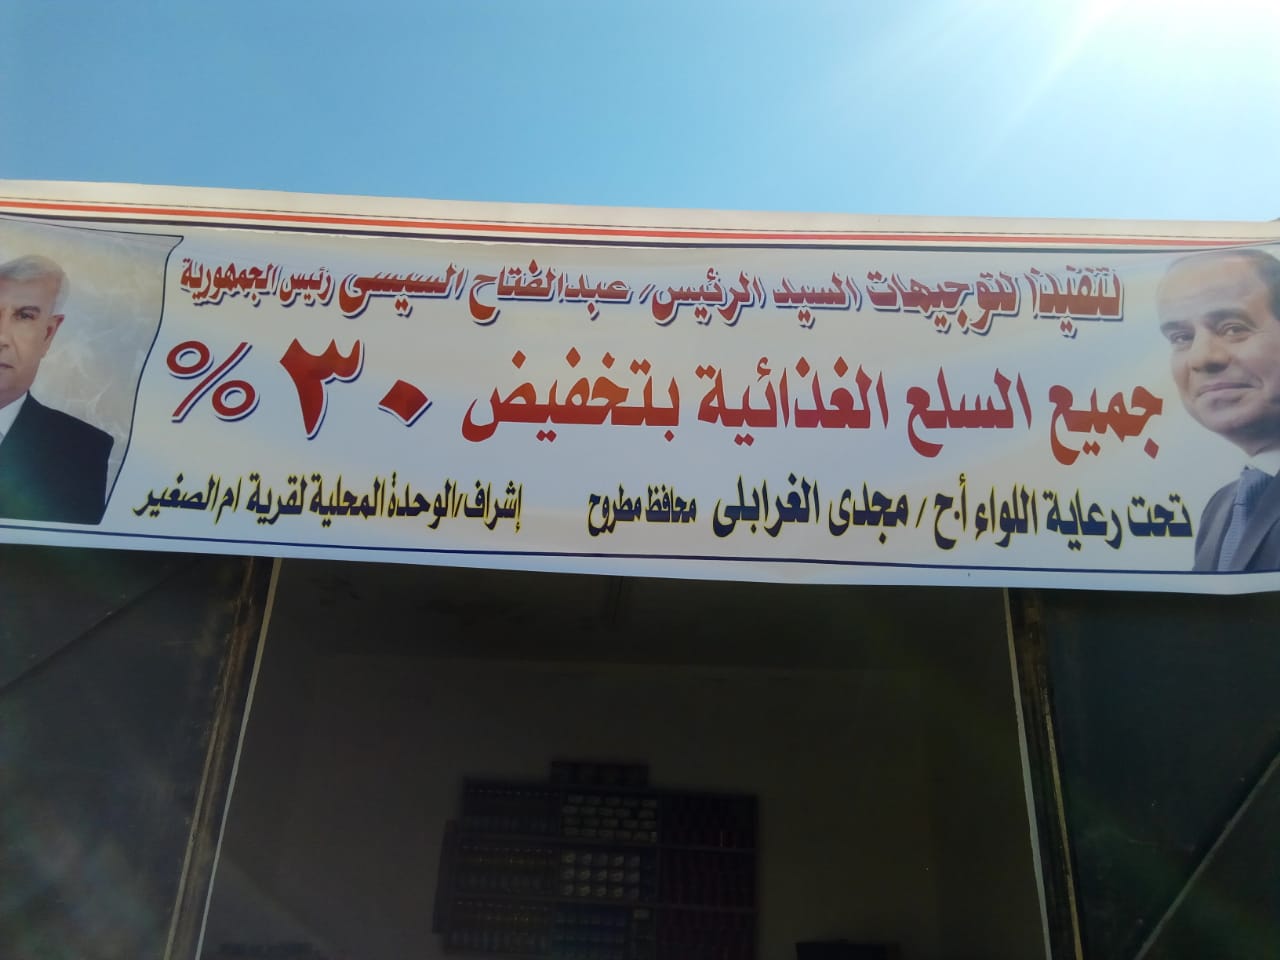   الغرابلى: افتتاح منفذ سلع غذائية فى قرية جارة أم الصغير أصغر قرية مصرية بتخفيض 30% (صور)